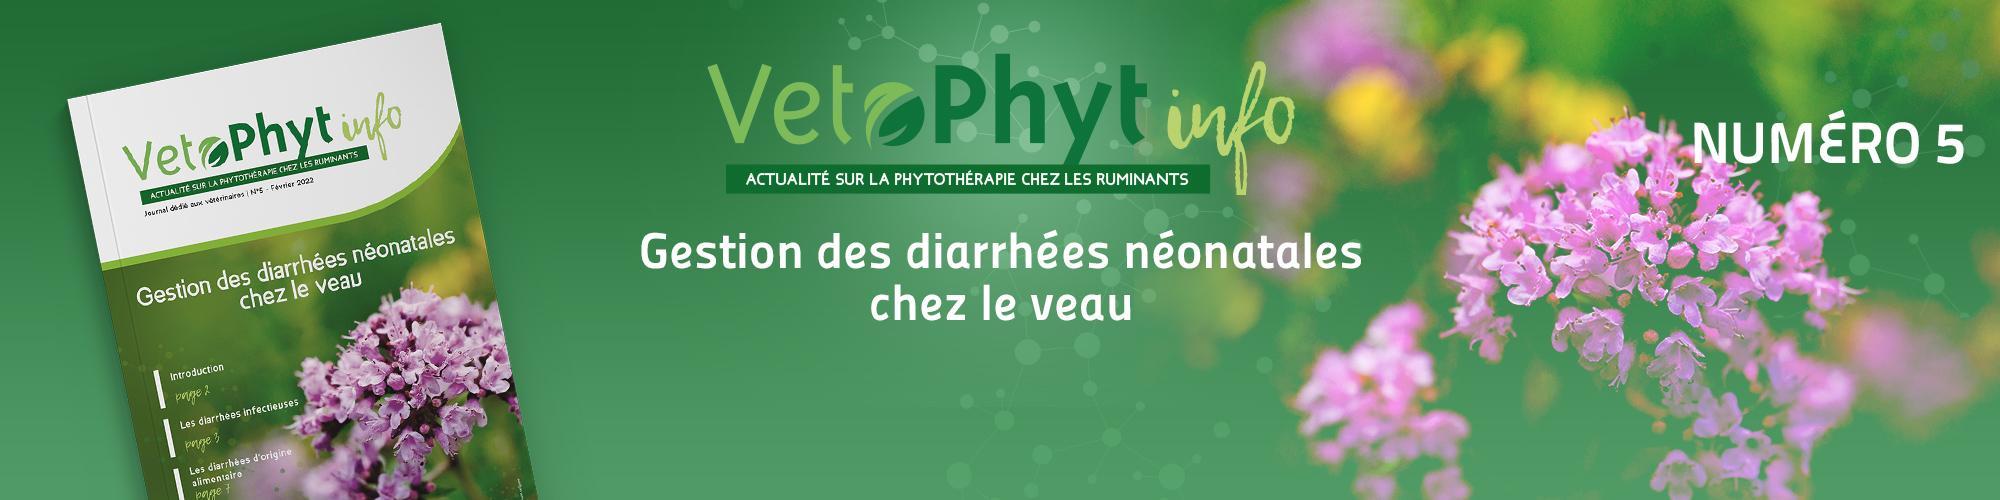 VetoPhyt Info 5 